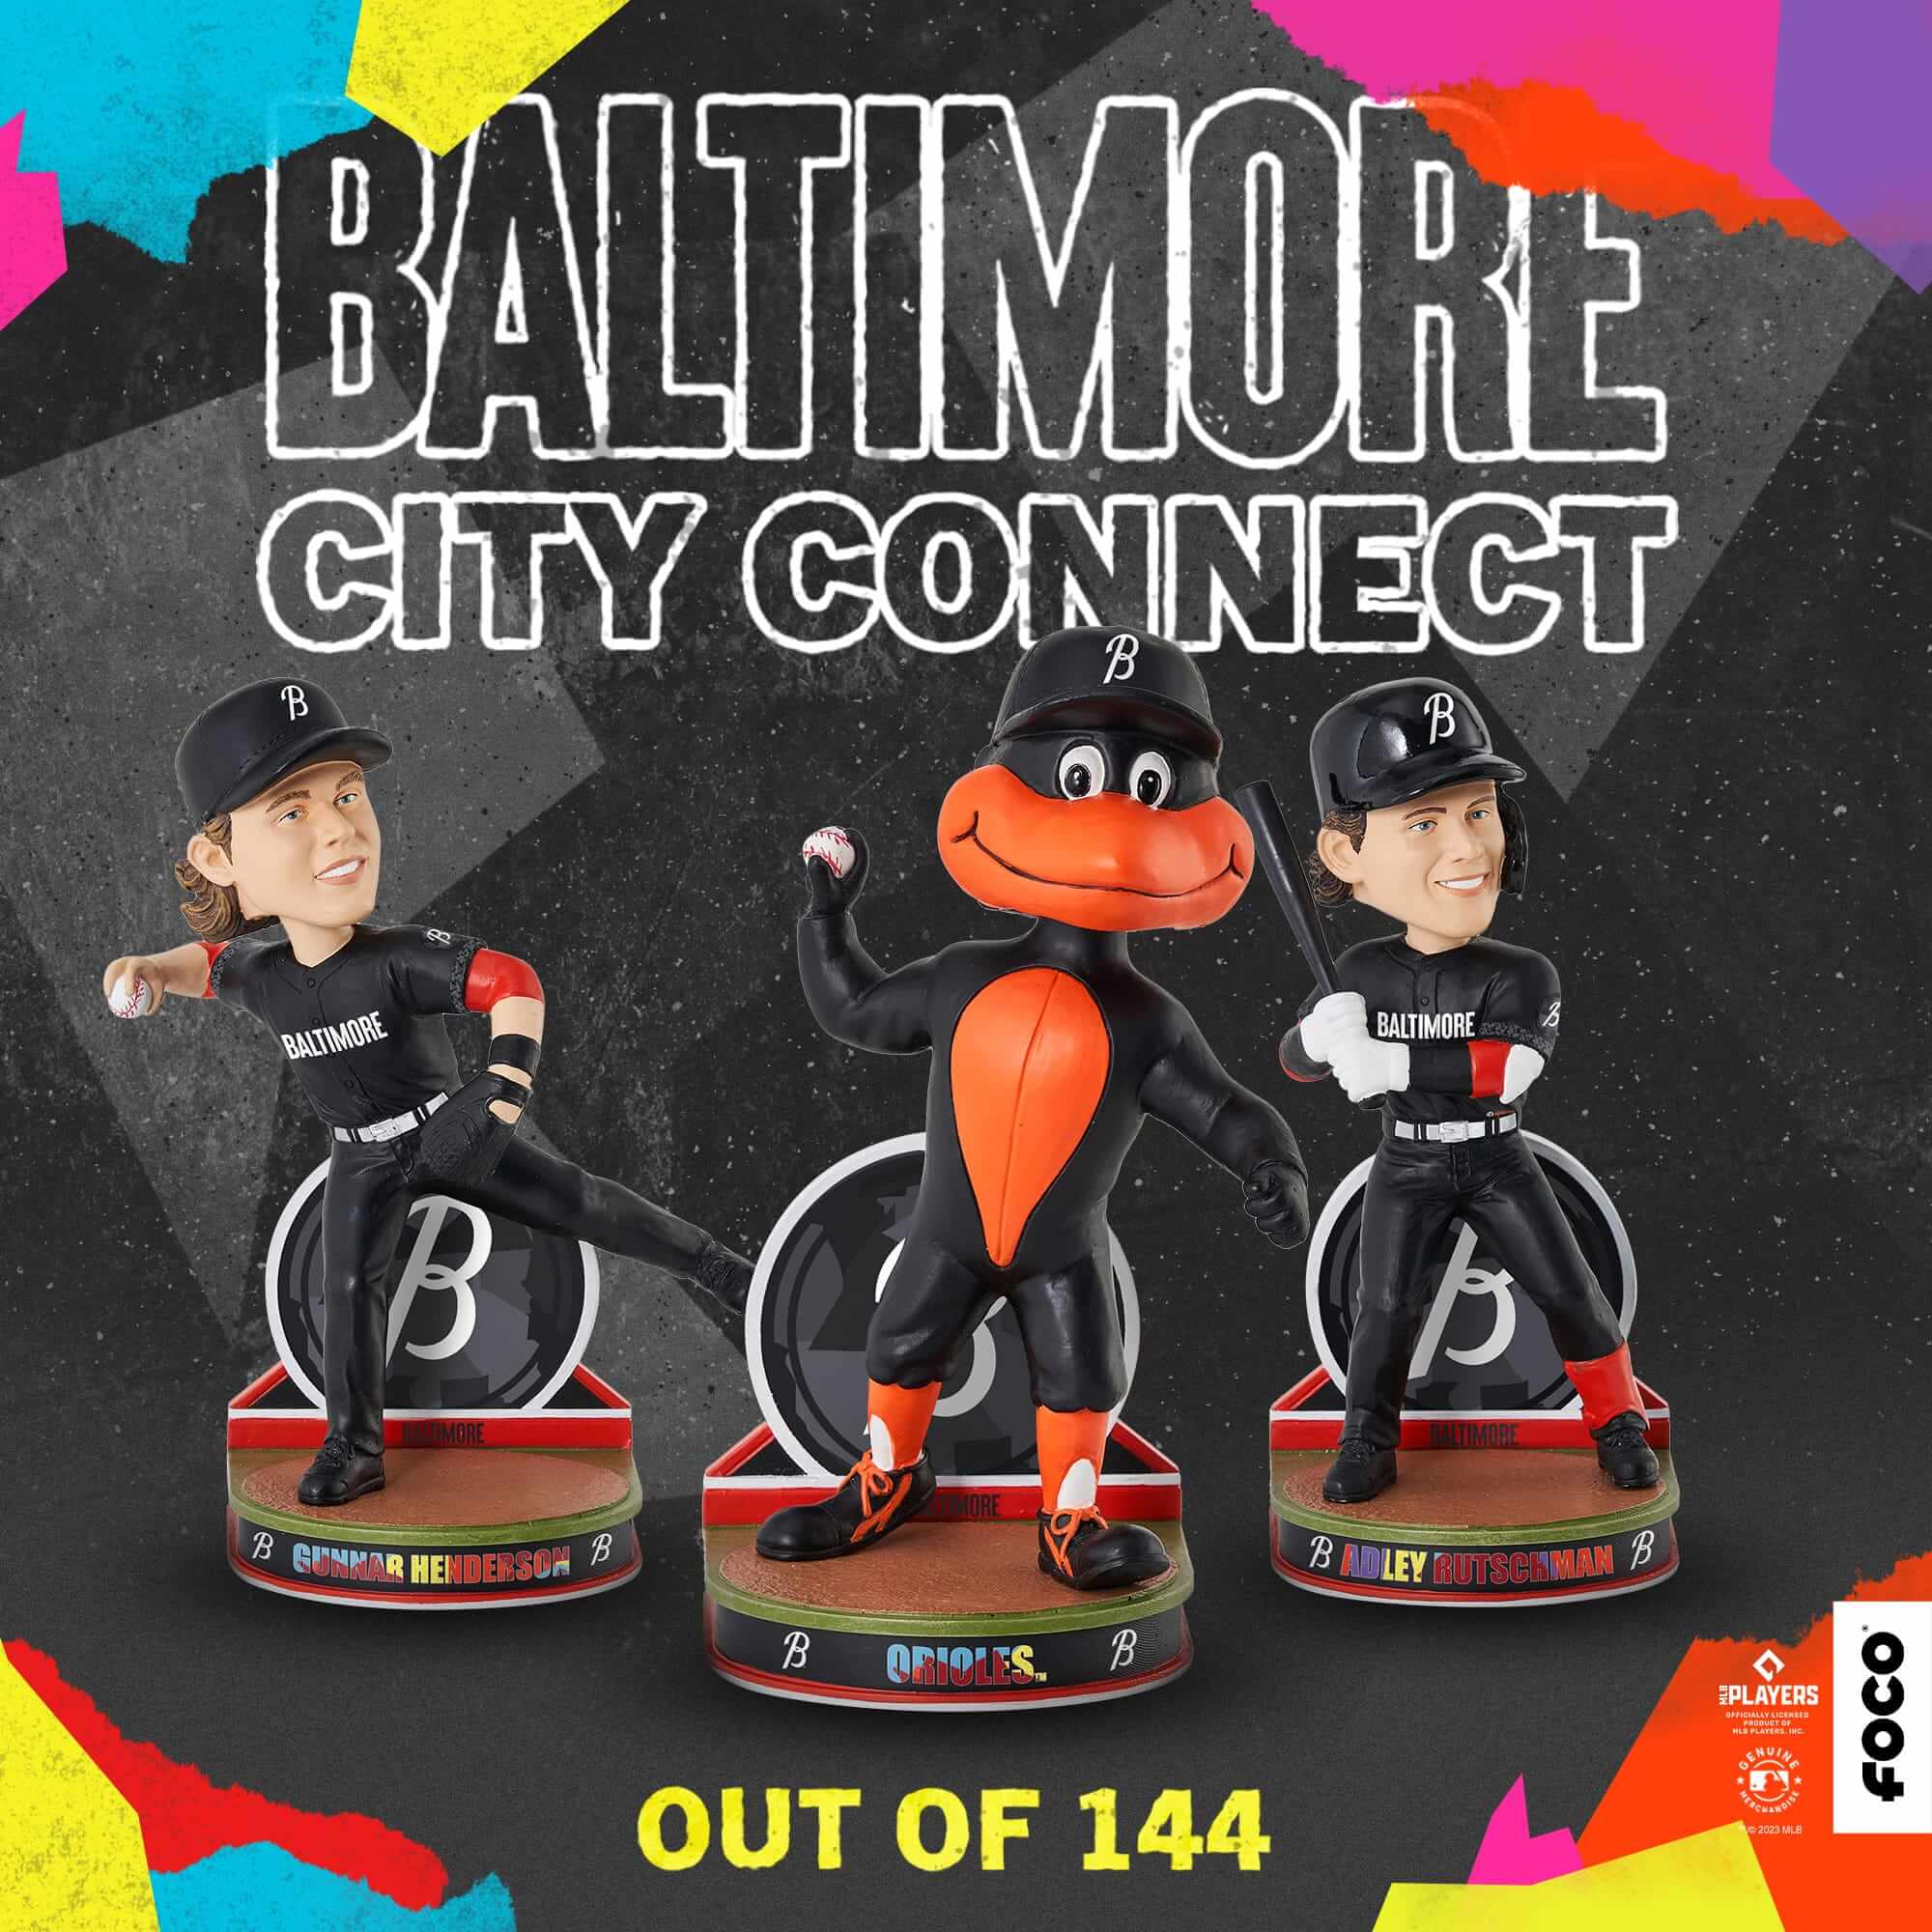 Baltimore Orioles unveil City Connect uniforms